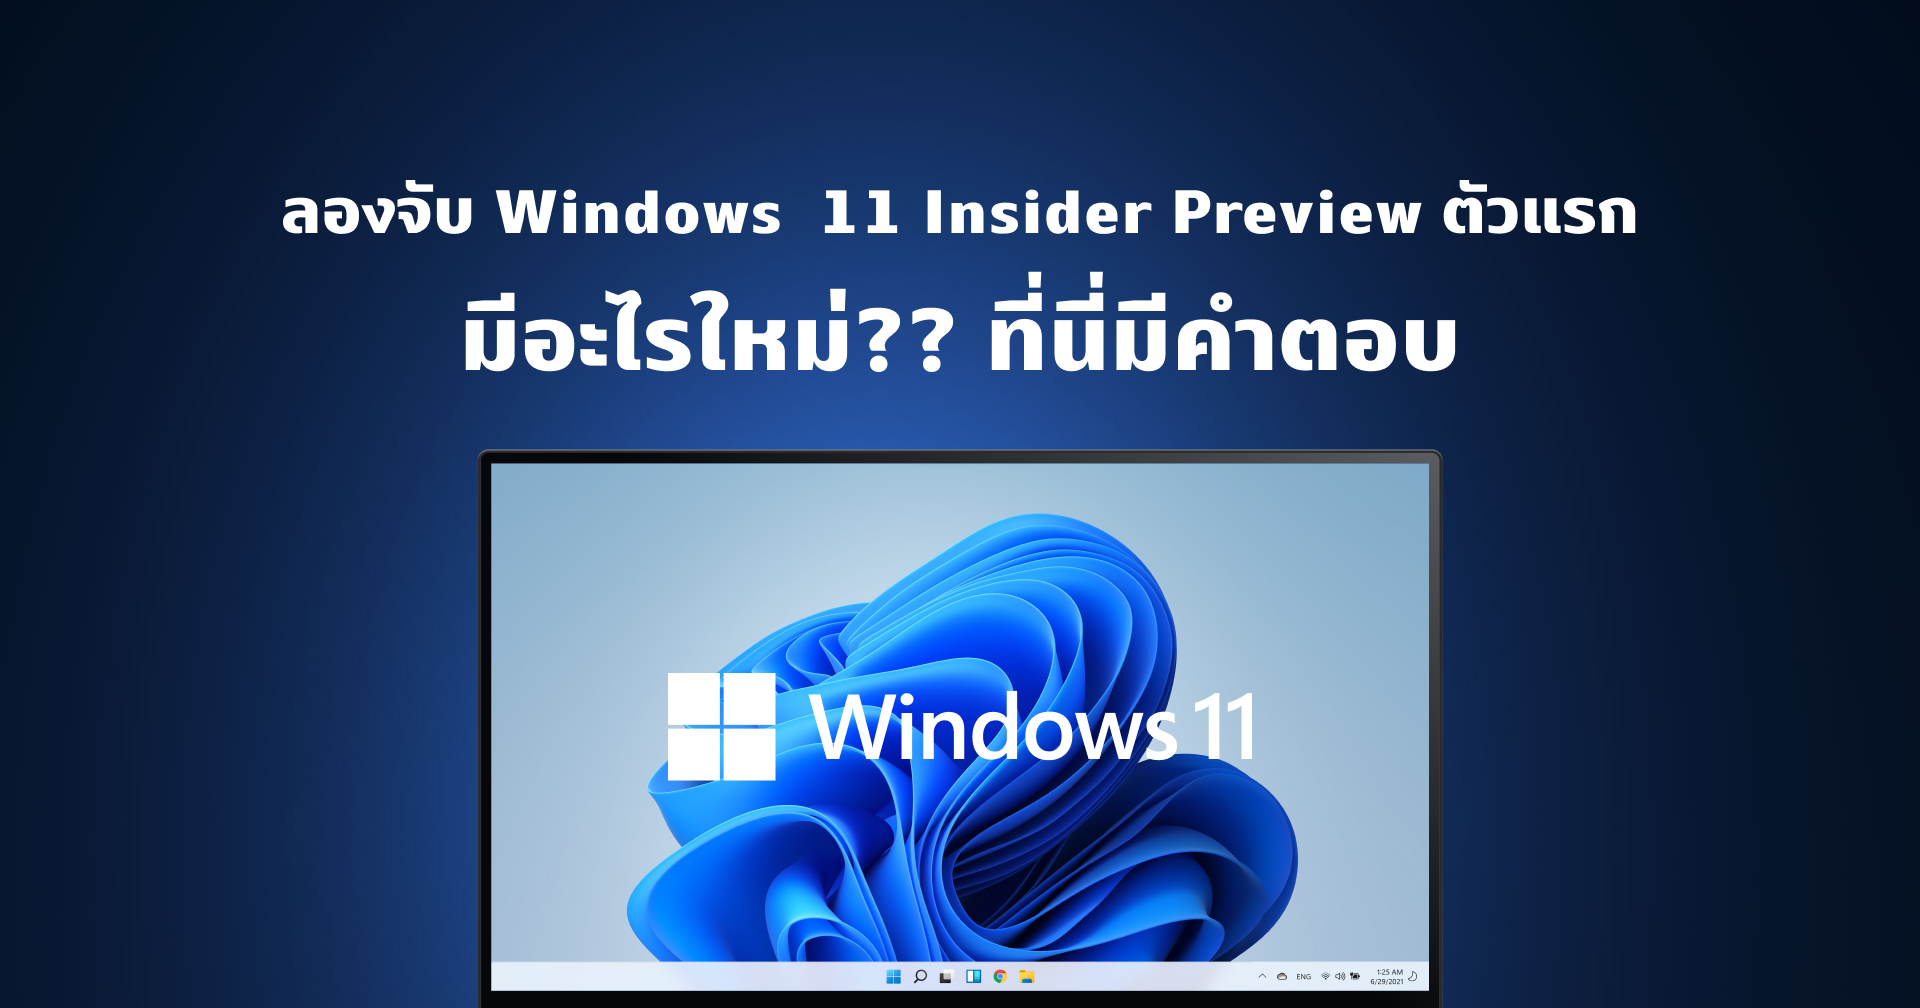 (Hands-on) ลองจับ Windows 11 Insider Preview ตัวแรก ยกเครื่องใหม่หมด พร้อมฟีเจอร์ใหม่อีกเพียบ